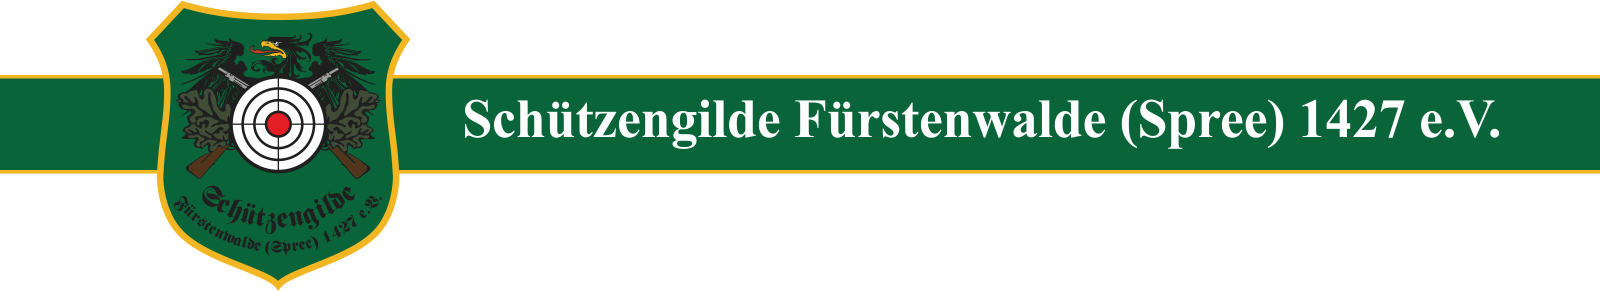 Schützengilde Fürstenwalde (Spree) 1427 e.V. Logo